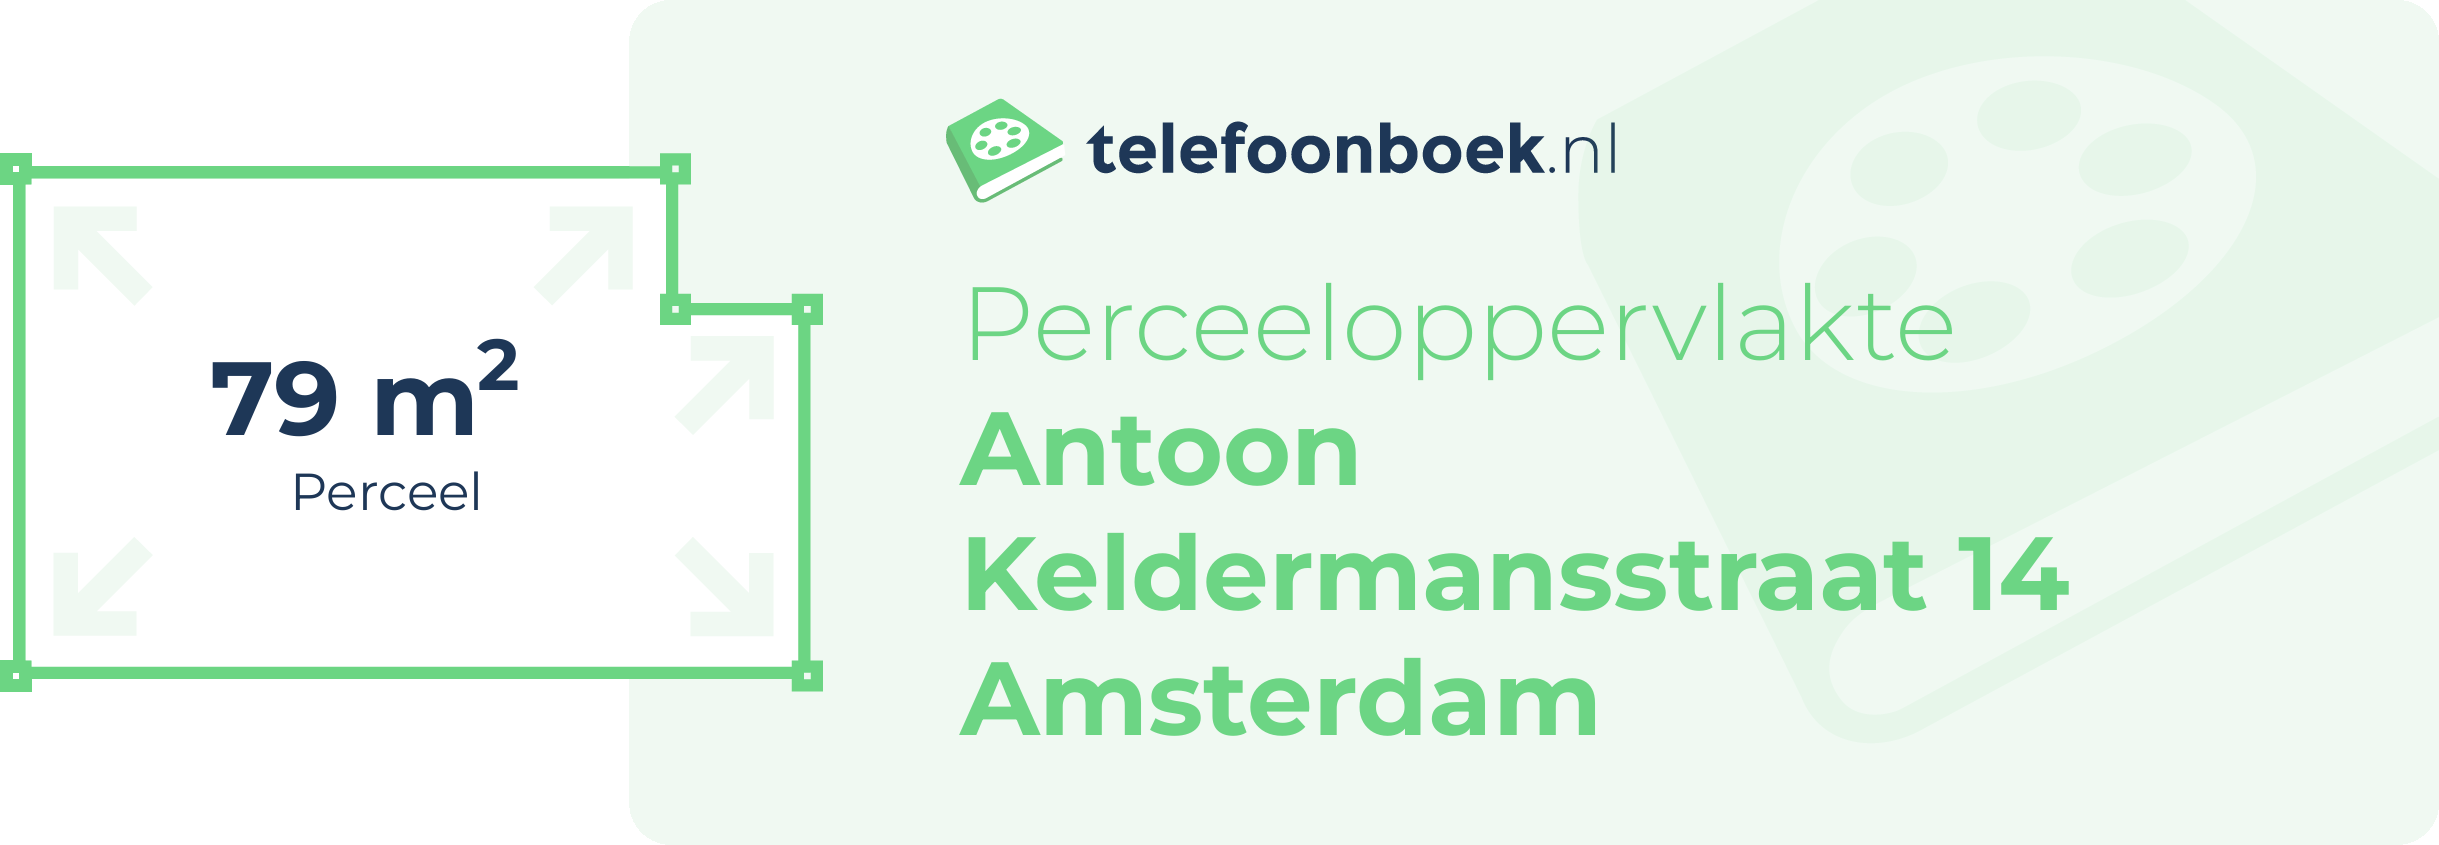 Perceeloppervlakte Antoon Keldermansstraat 14 Amsterdam